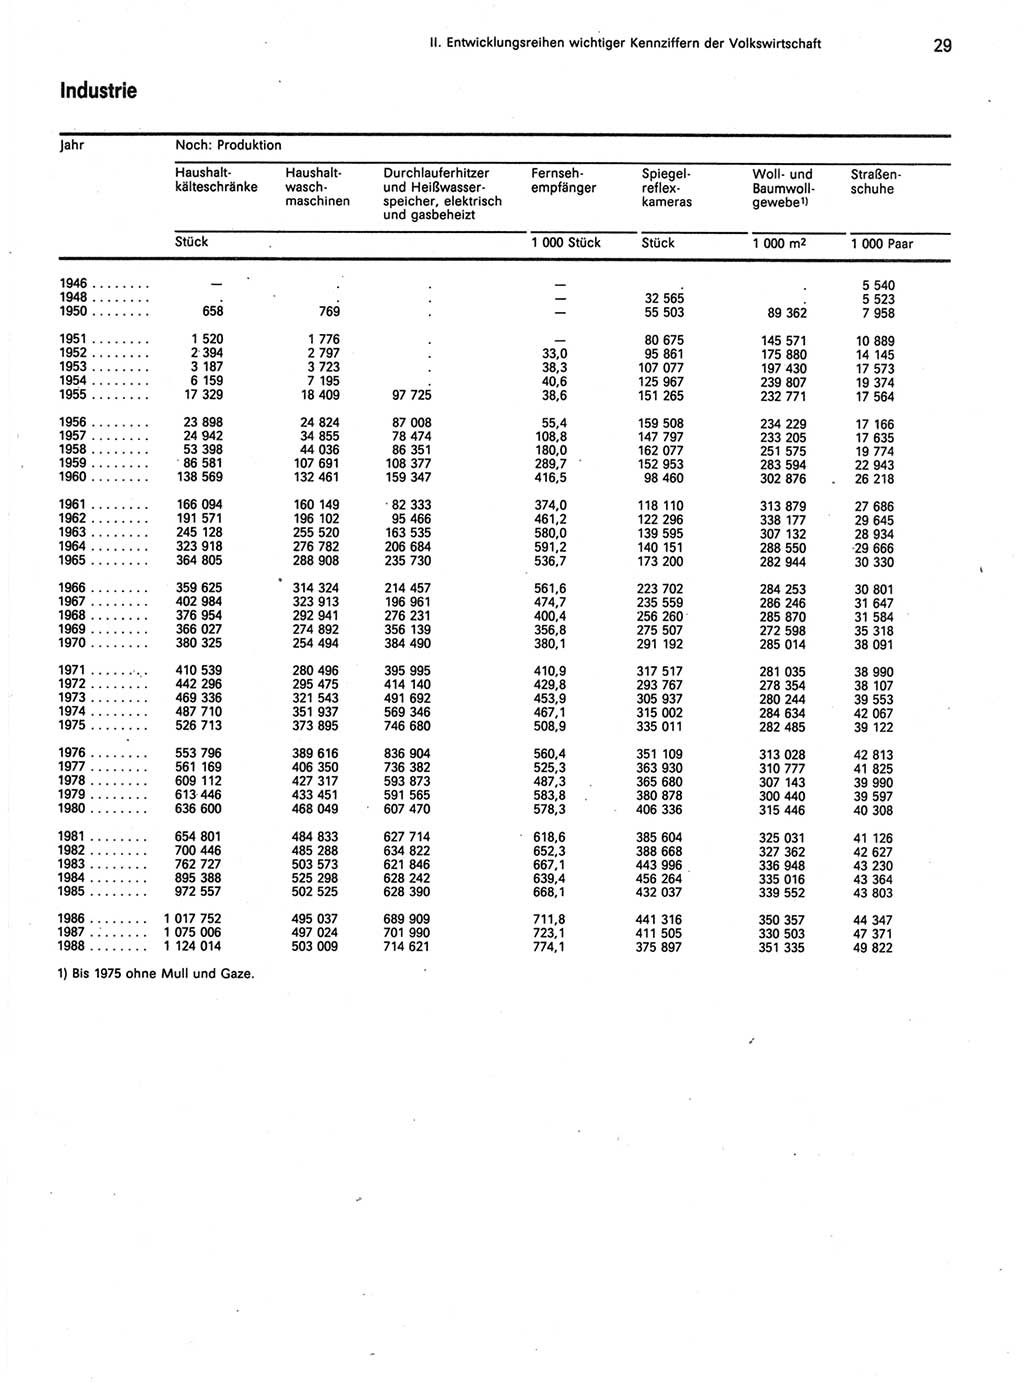 Statistisches Jahrbuch der Deutschen Demokratischen Republik (DDR) 1989, Seite 29 (Stat. Jb. DDR 1989, S. 29)